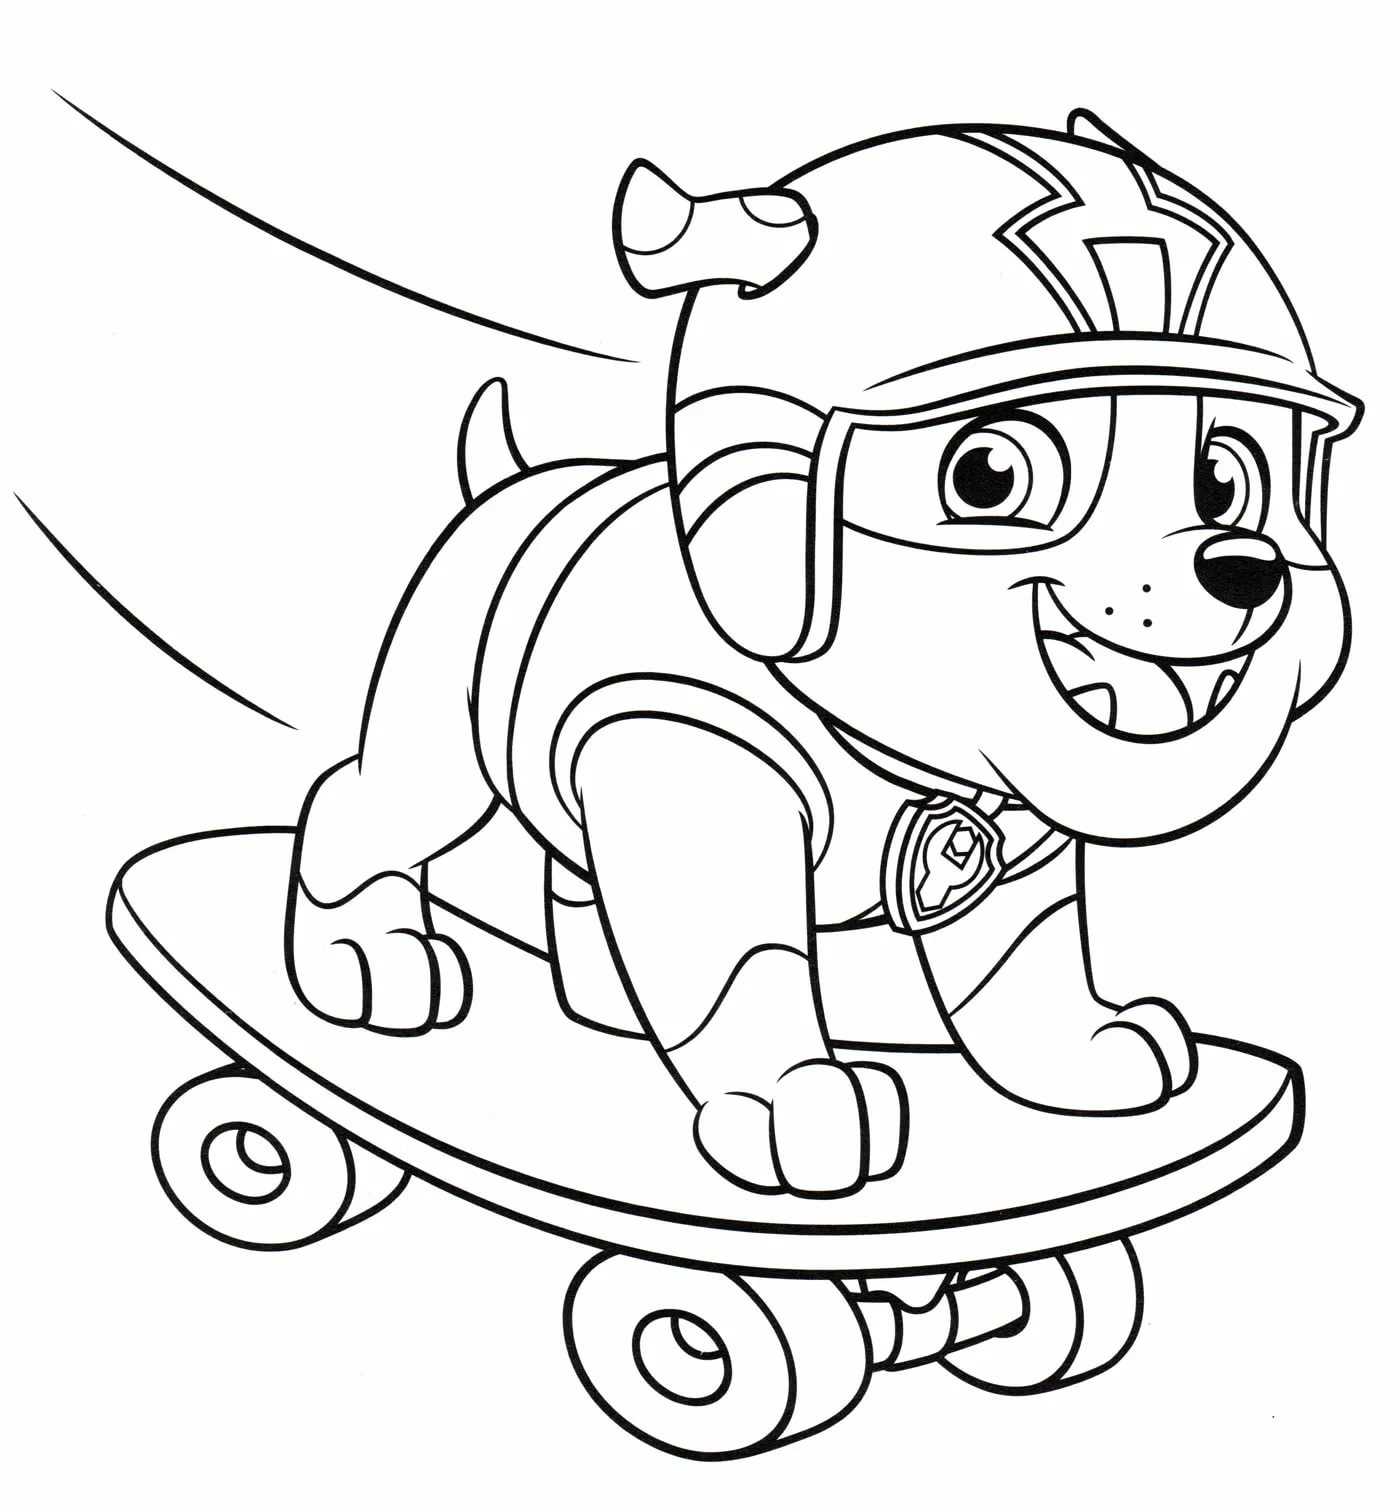 Раскраски Крепыш познакомят малышей с еще одним персонажем мультфильма о приключениях щенячьего патруля Выберите понравившиеся раскраски Крепыша, а затем скачайте или распечатайте их бесплатно в формате А4